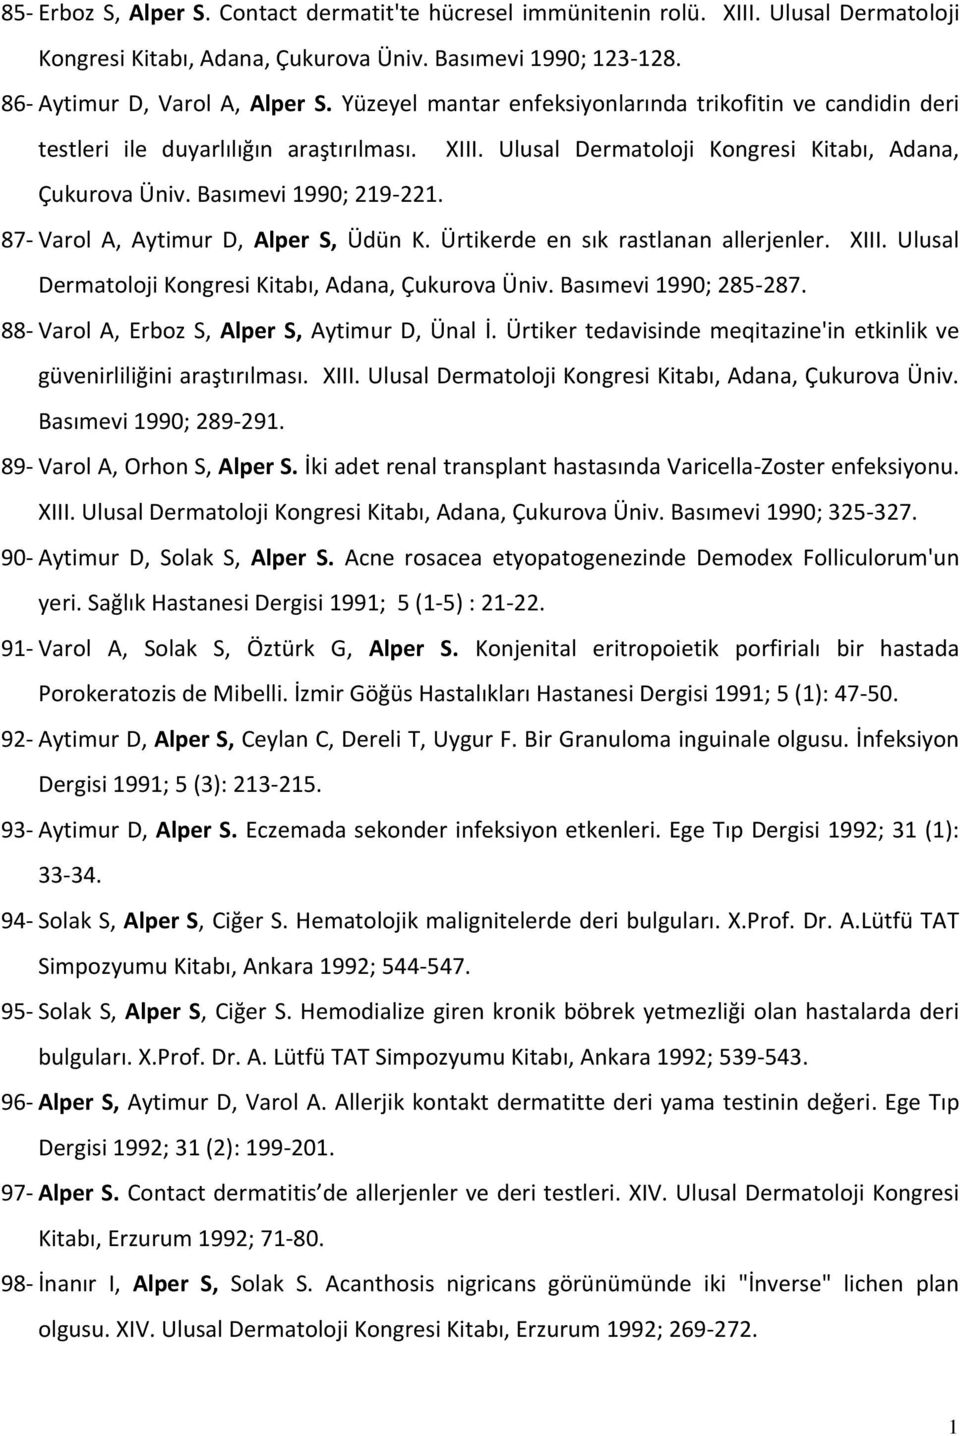 87- Varol A, Aytimur D, Alper S, Üdün K. Ürtikerde en sık rastlanan allerjenler. XIII. Ulusal Dermatoloji Kongresi Kitabı, Adana, Çukurova Üniv. Basımevi 990; 285-287.